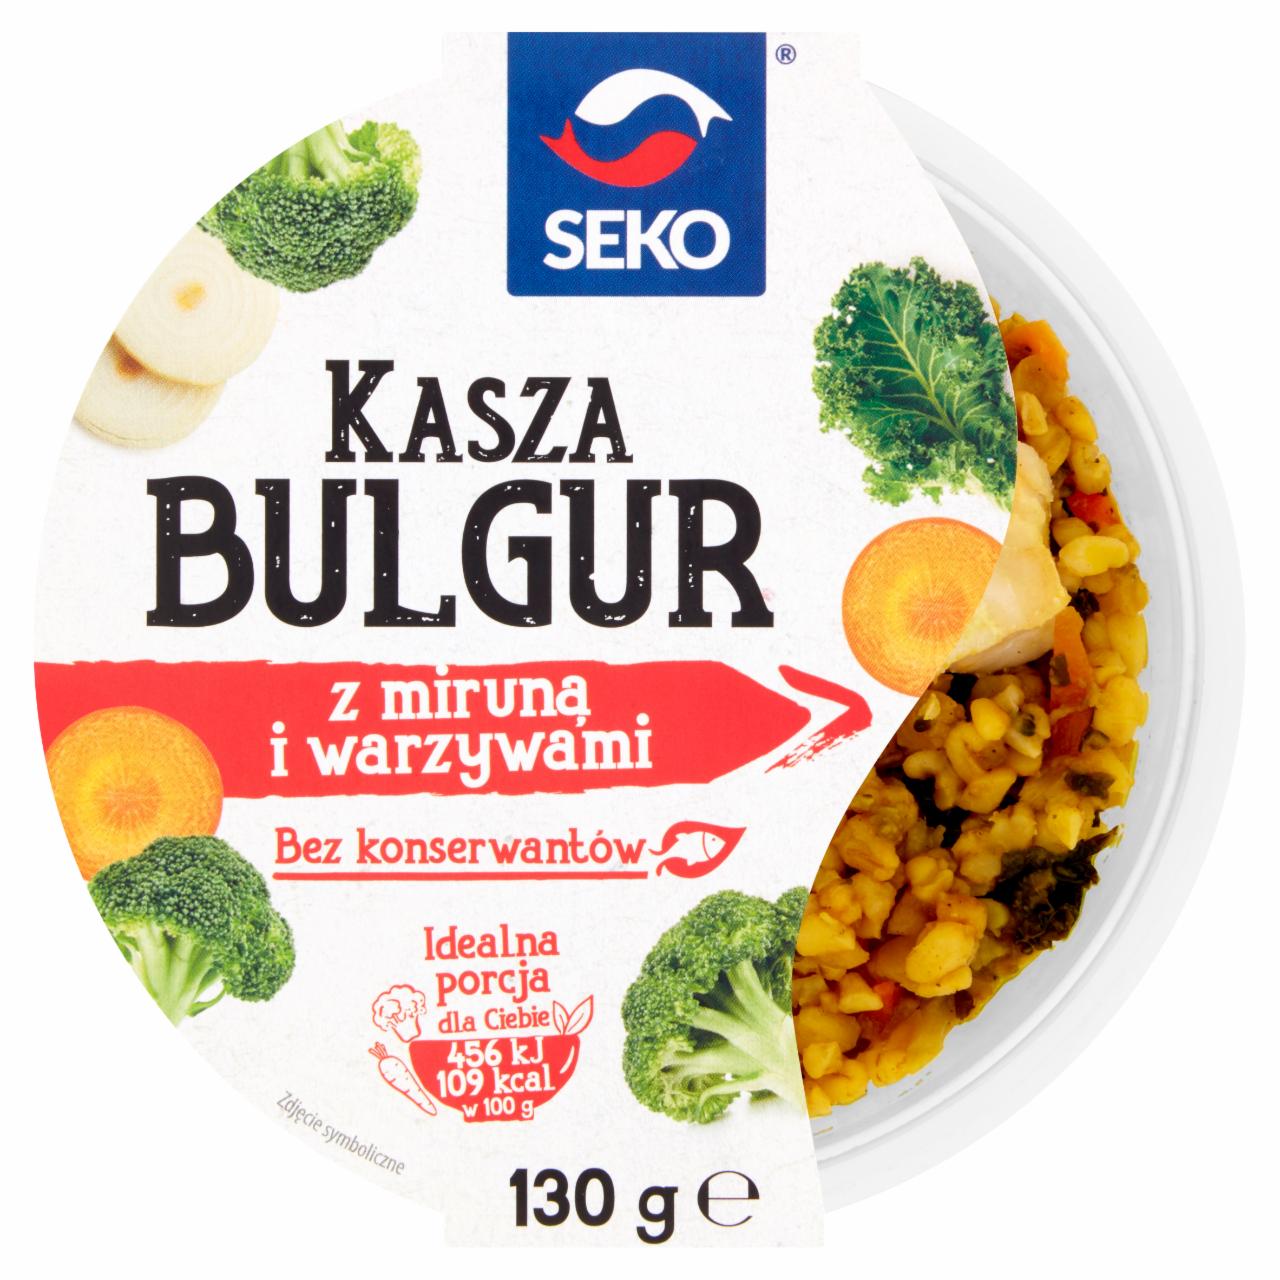 Zdjęcia - Seko Kasza bulgur z miruną i warzywami 130 g